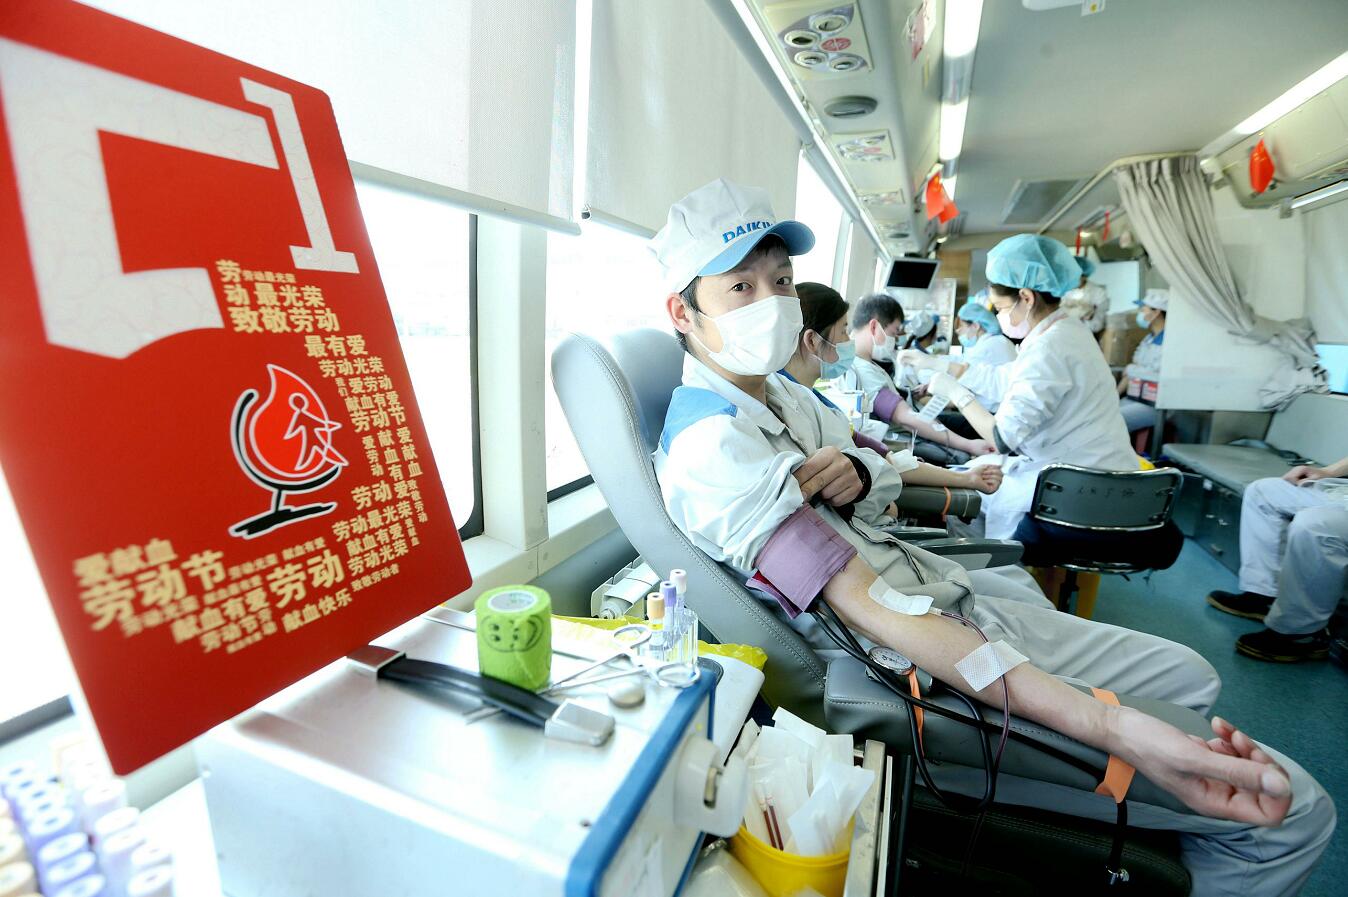 上海大金空调179名员工撸袖献血迎“五一”  企业坚持11年献血36万余毫升